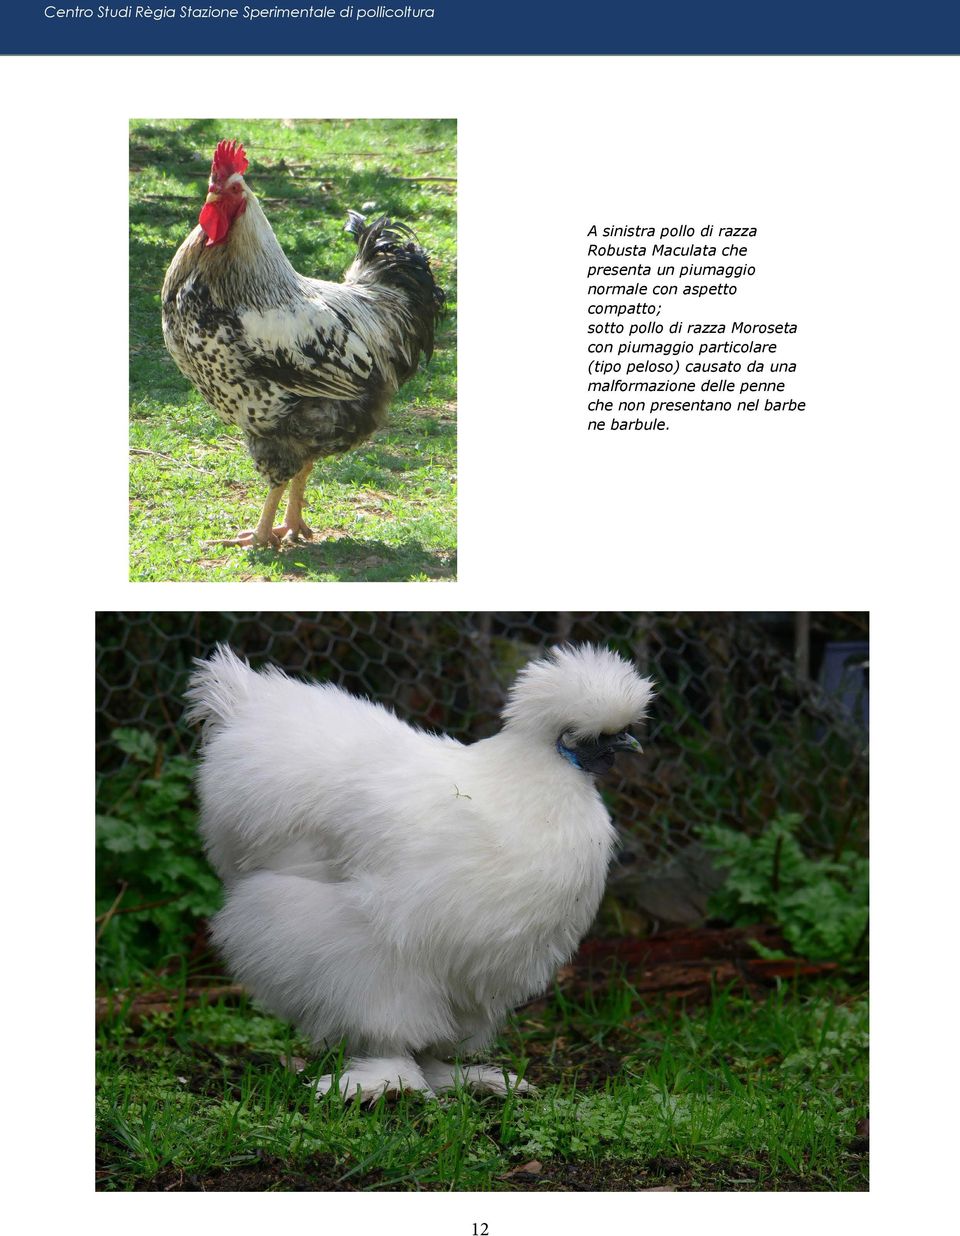 compatto; sotto pollo di razza Moroseta con piumaggio particolare (tipo